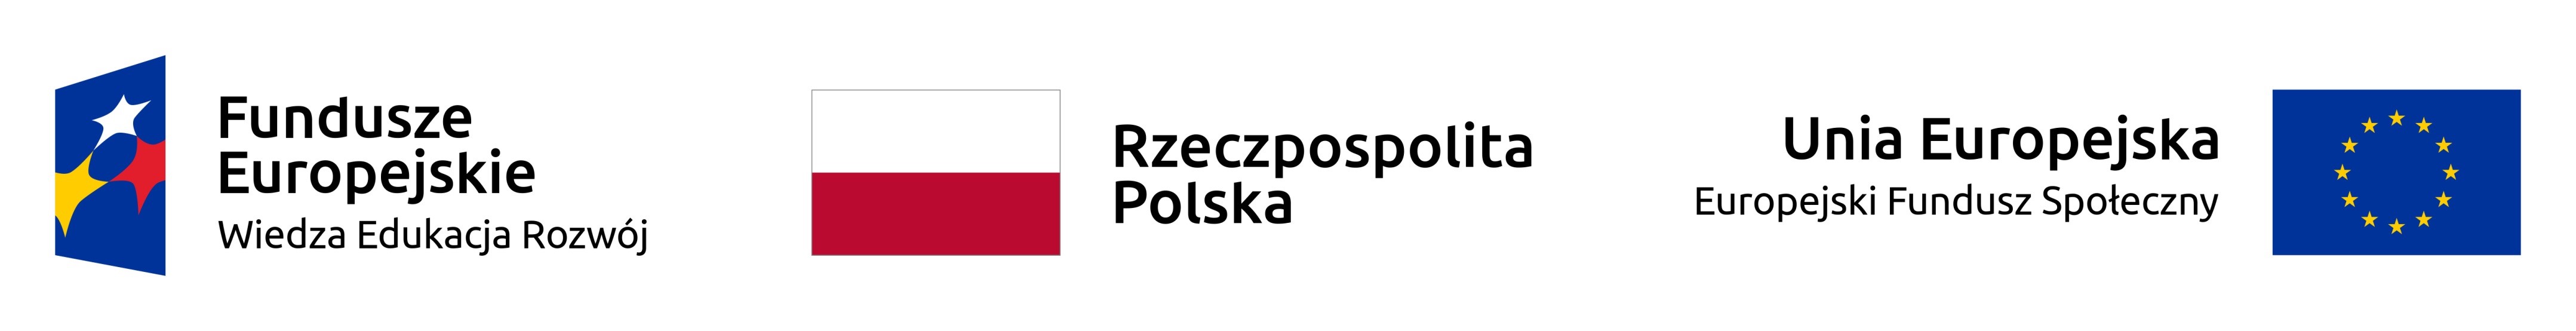 logotyp funduszy europejskich logotyp rzeczpospolitej polskiej oraz logotyp unii europejskiej